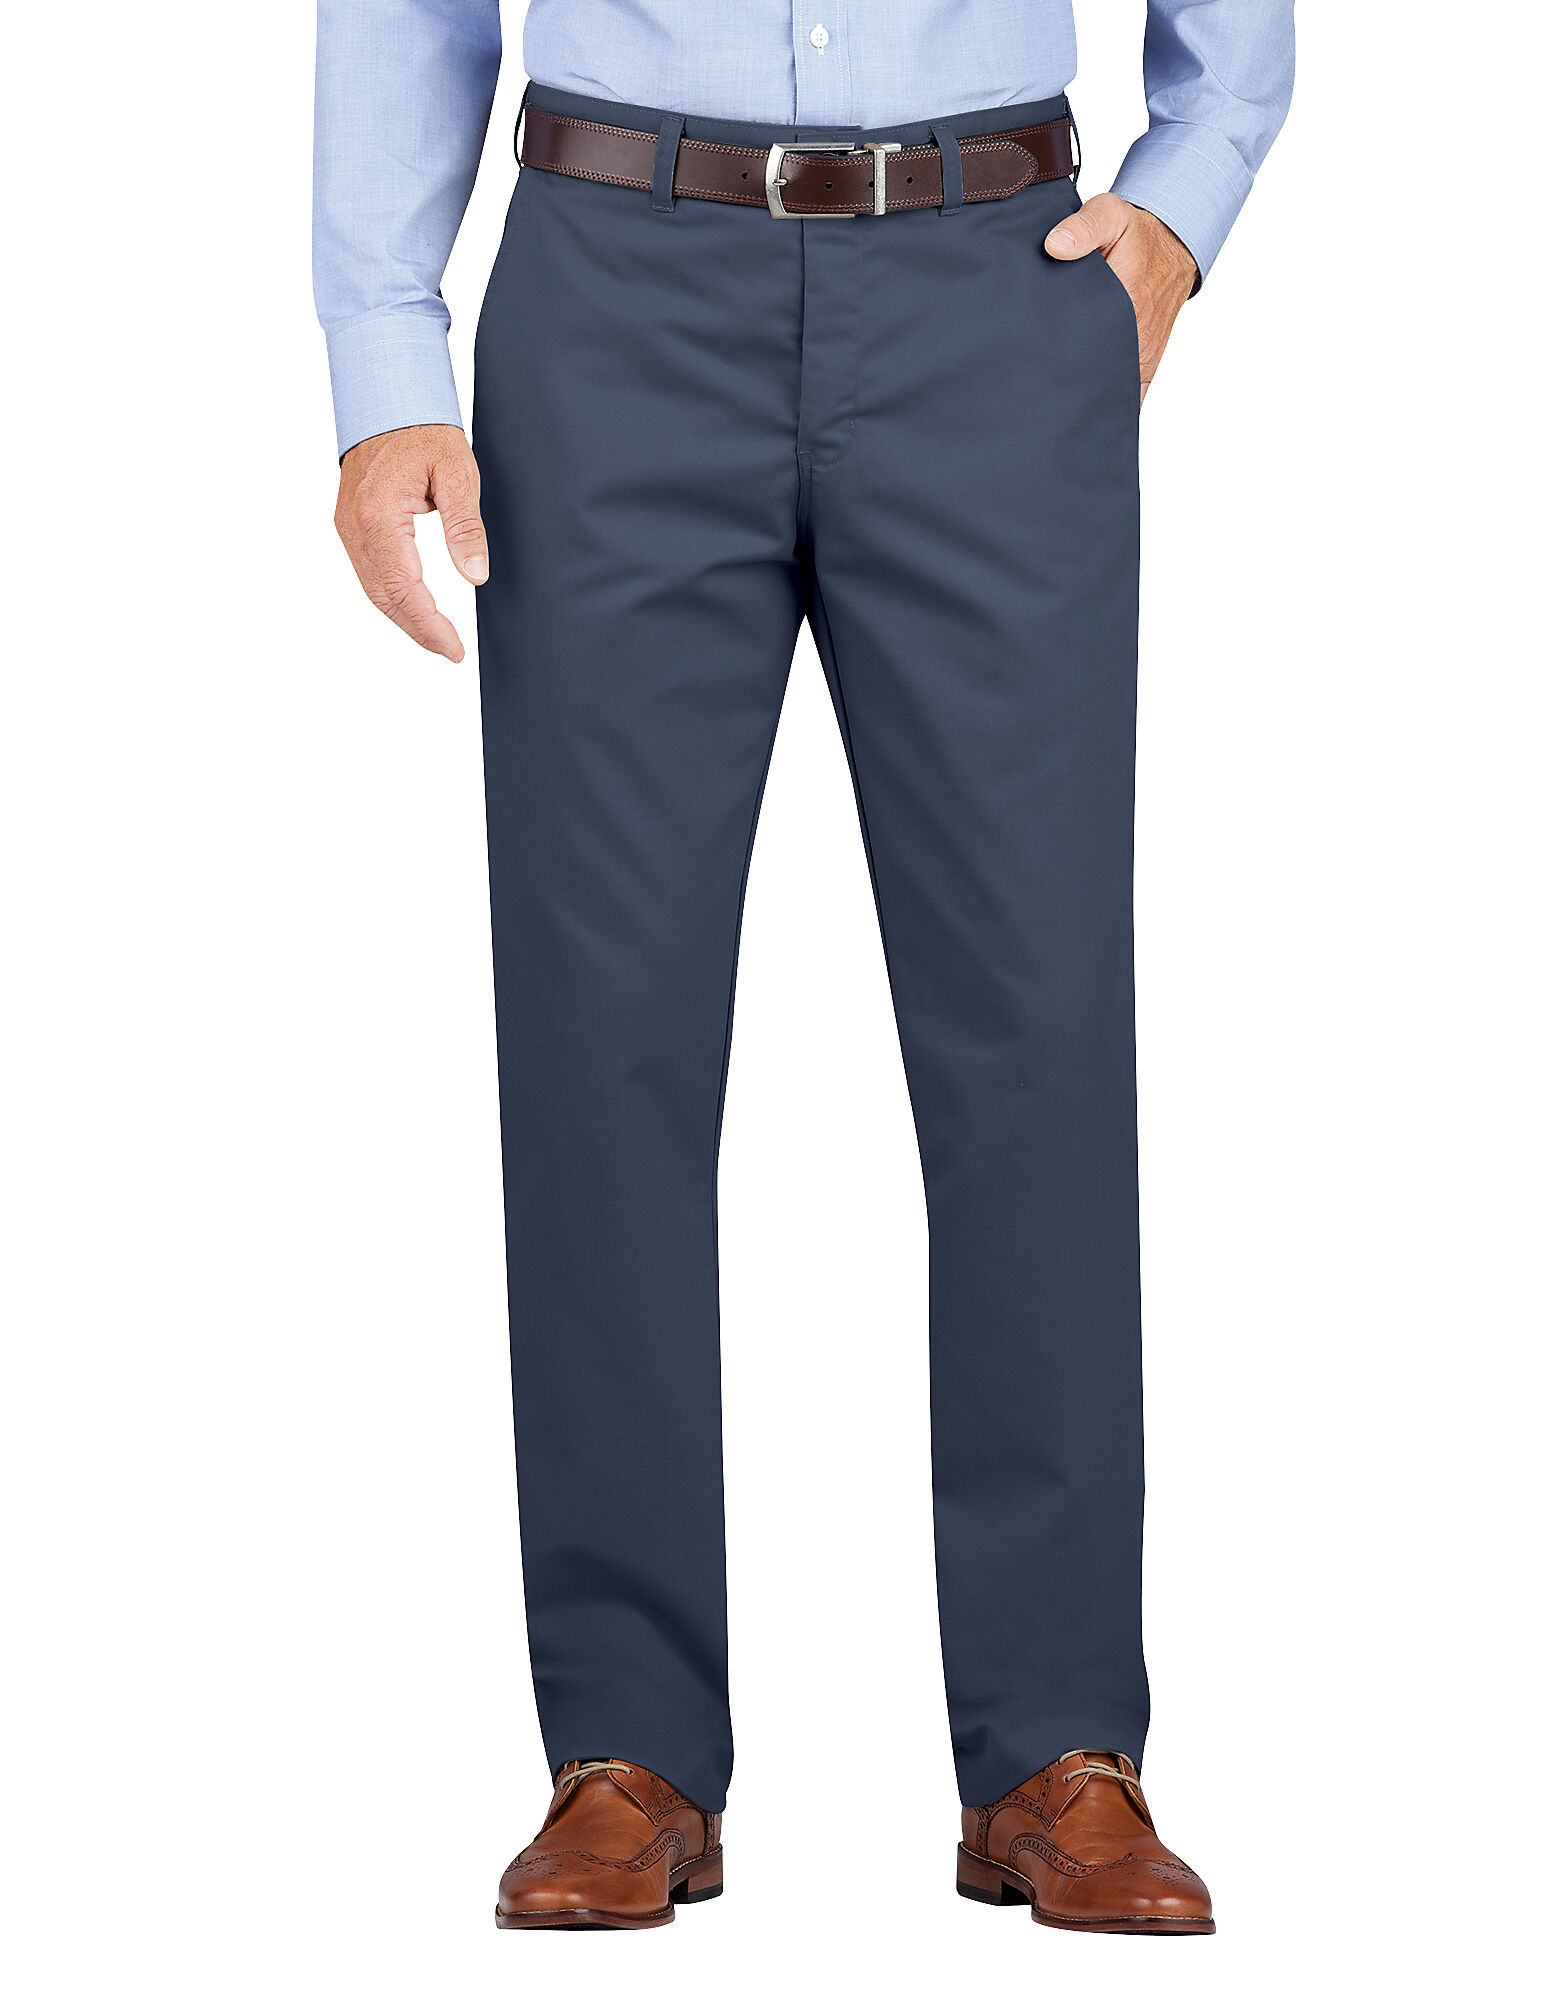 navy blue khaki pants mens